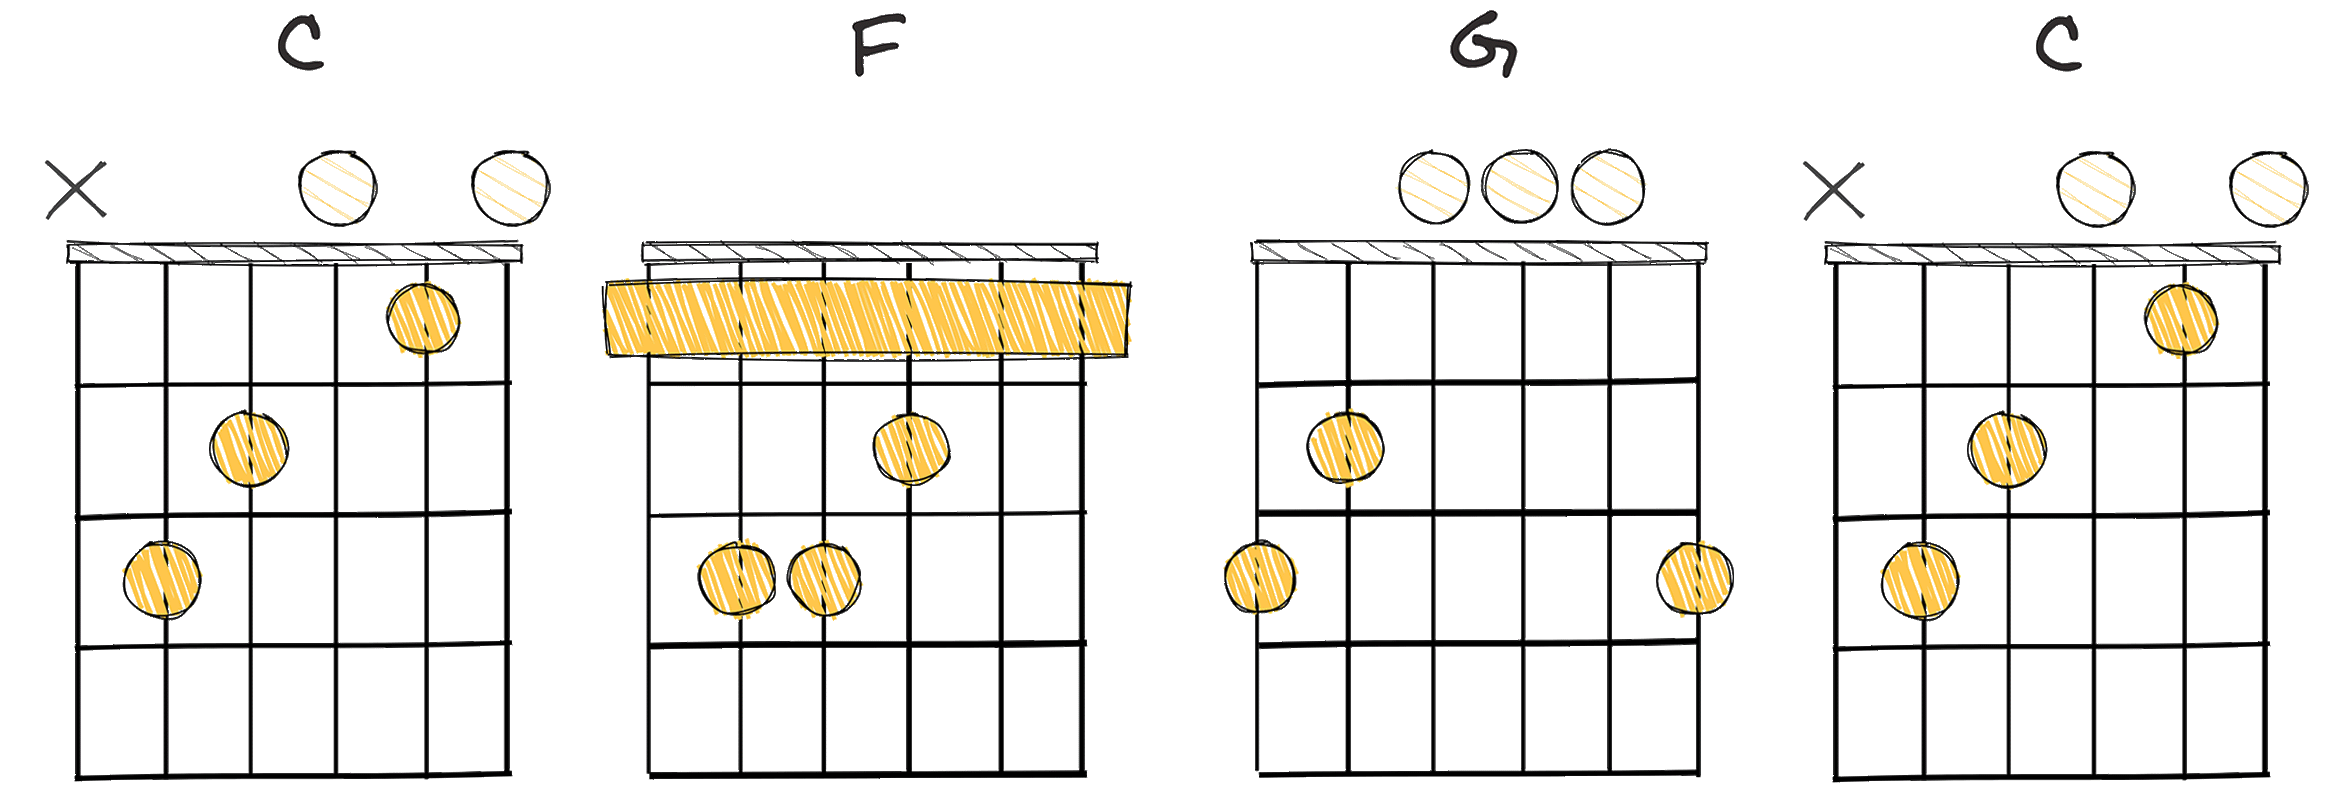 I - IV - V - I (1 - 4 - 5 - 1) chords diagram